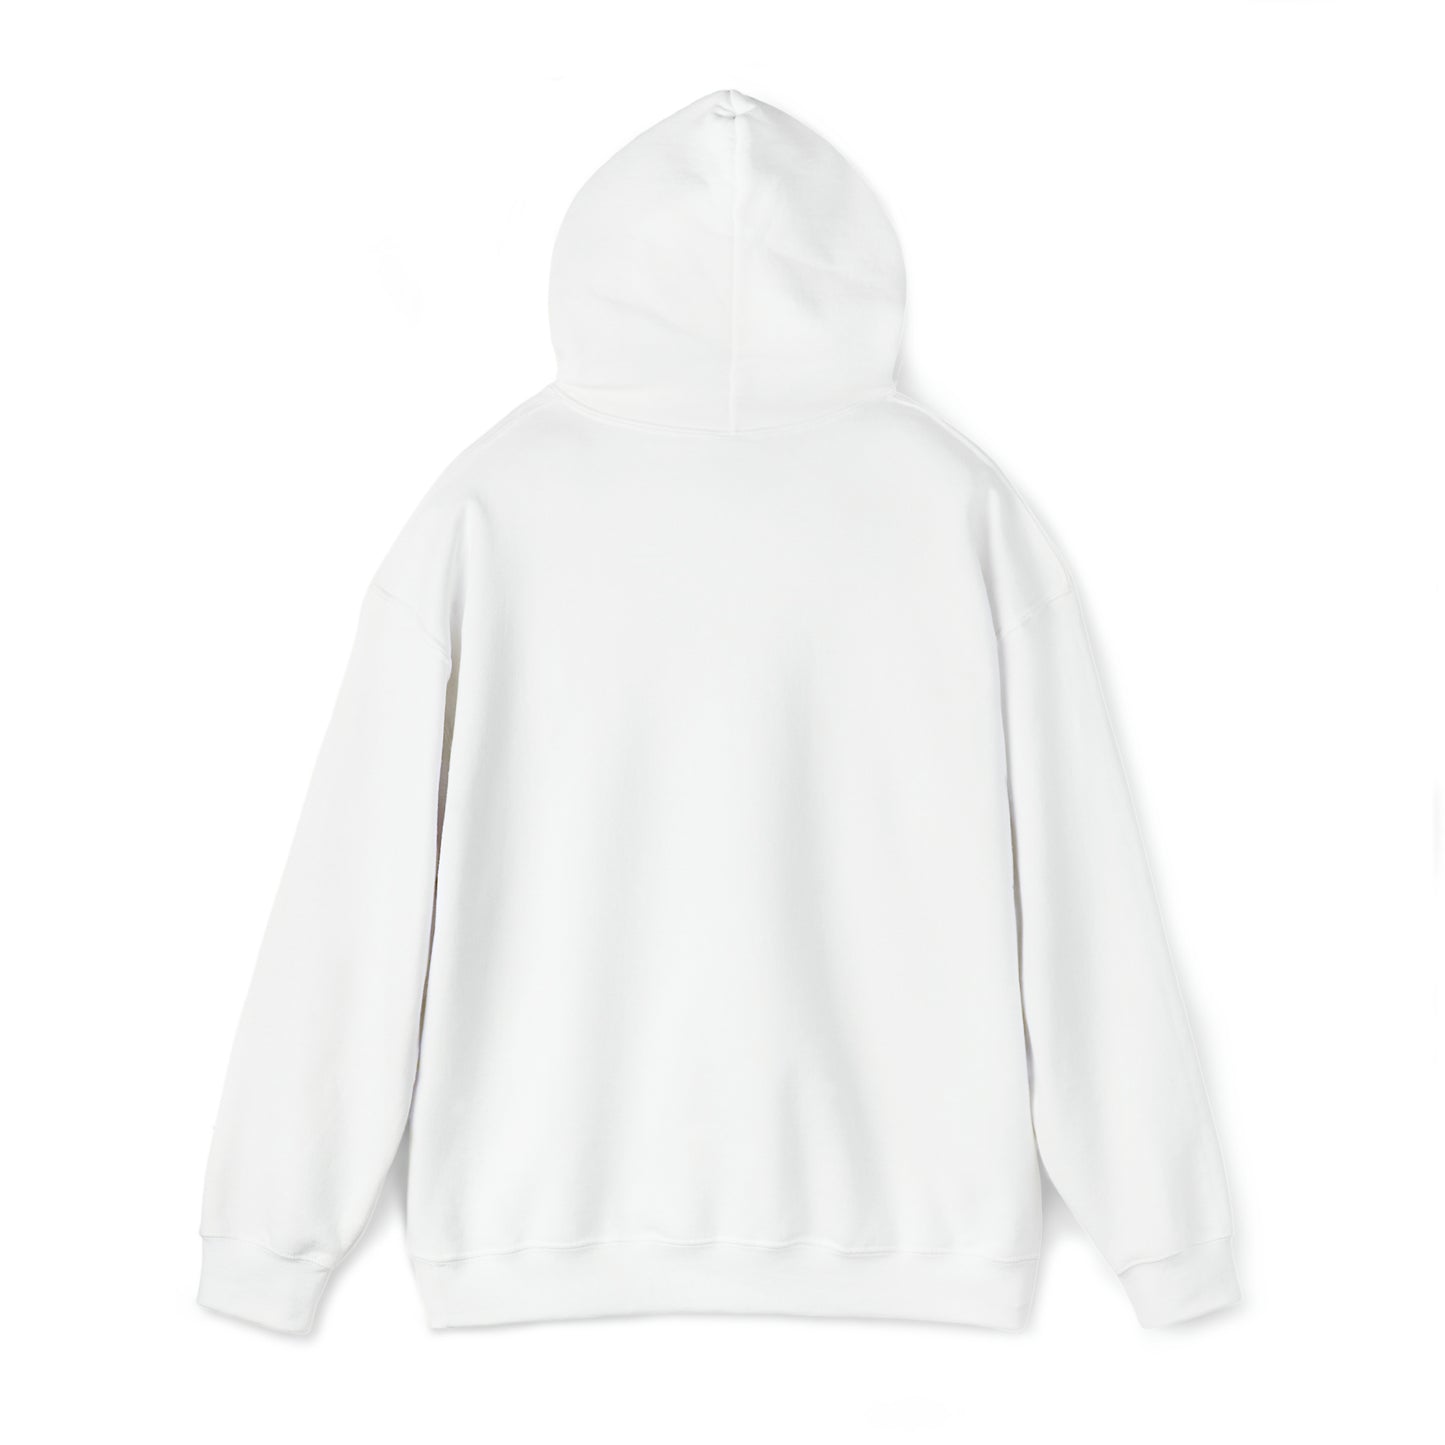 I jerk-it Unisex Heavy Blend™ Hooded Sweatshirt